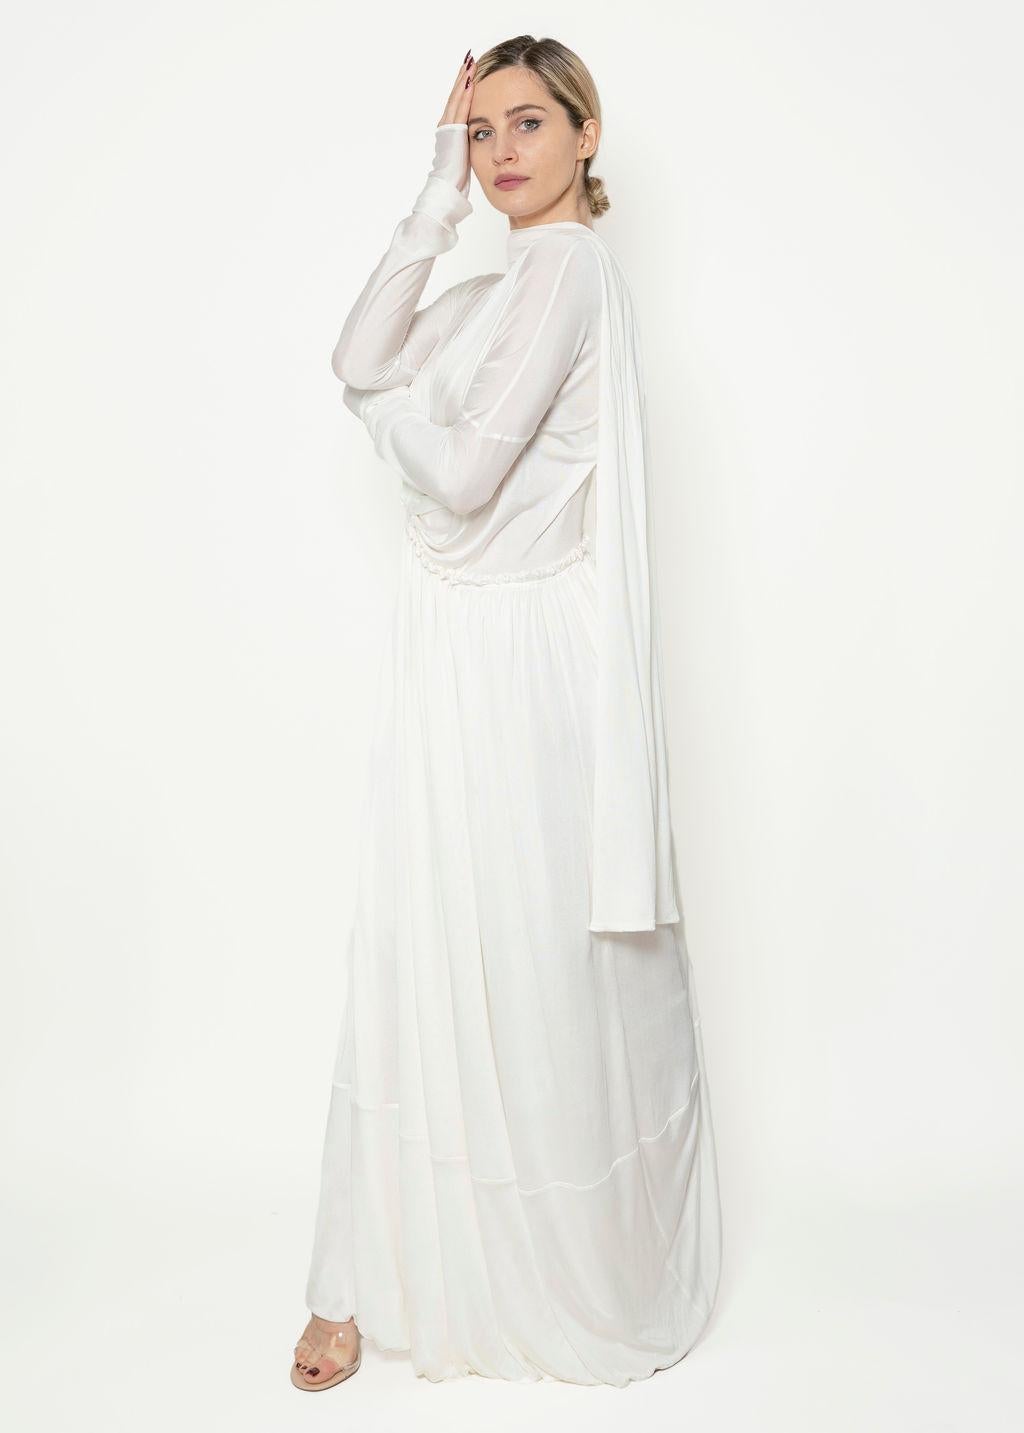 Unser Angelic Jil Sander Frühjahr 2020 Kleid ist aus 100% Seide und wird in Italien gefertigt. Der elastische Bund, die langen Ärmel und das asymmetrisch geraffte Mieder sorgen für eine klassische Silhouette. Der schmale Schal und der hohe